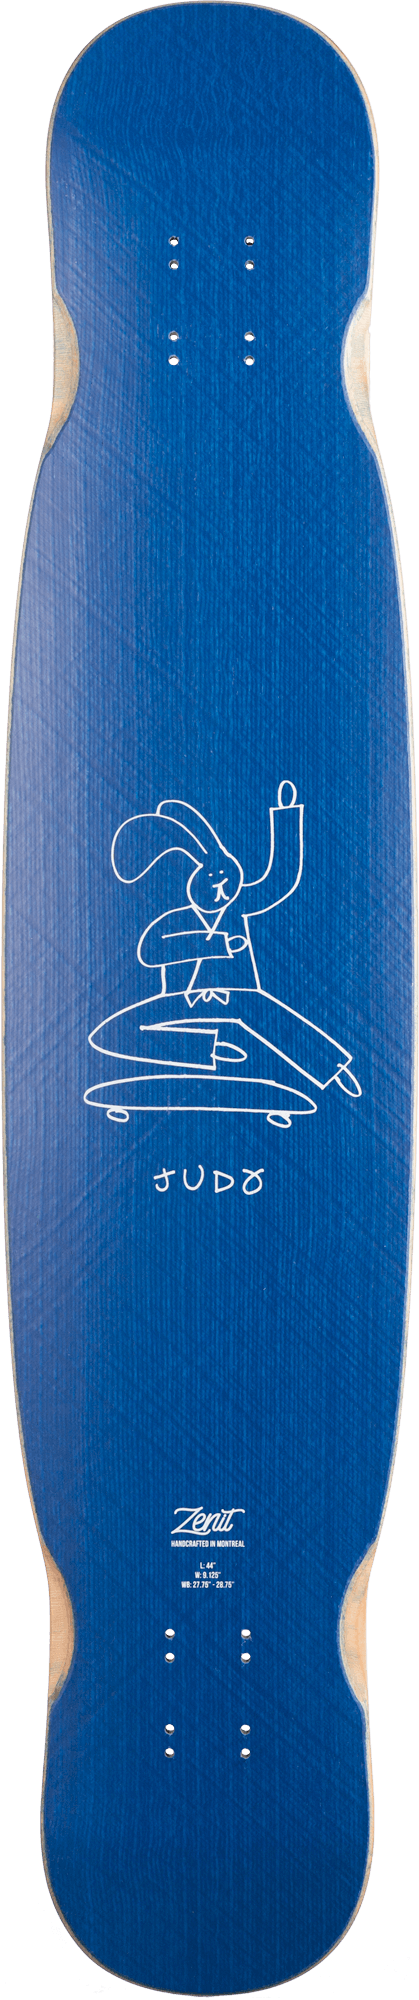 zenit-judo-deck-44 Switchback Longboards